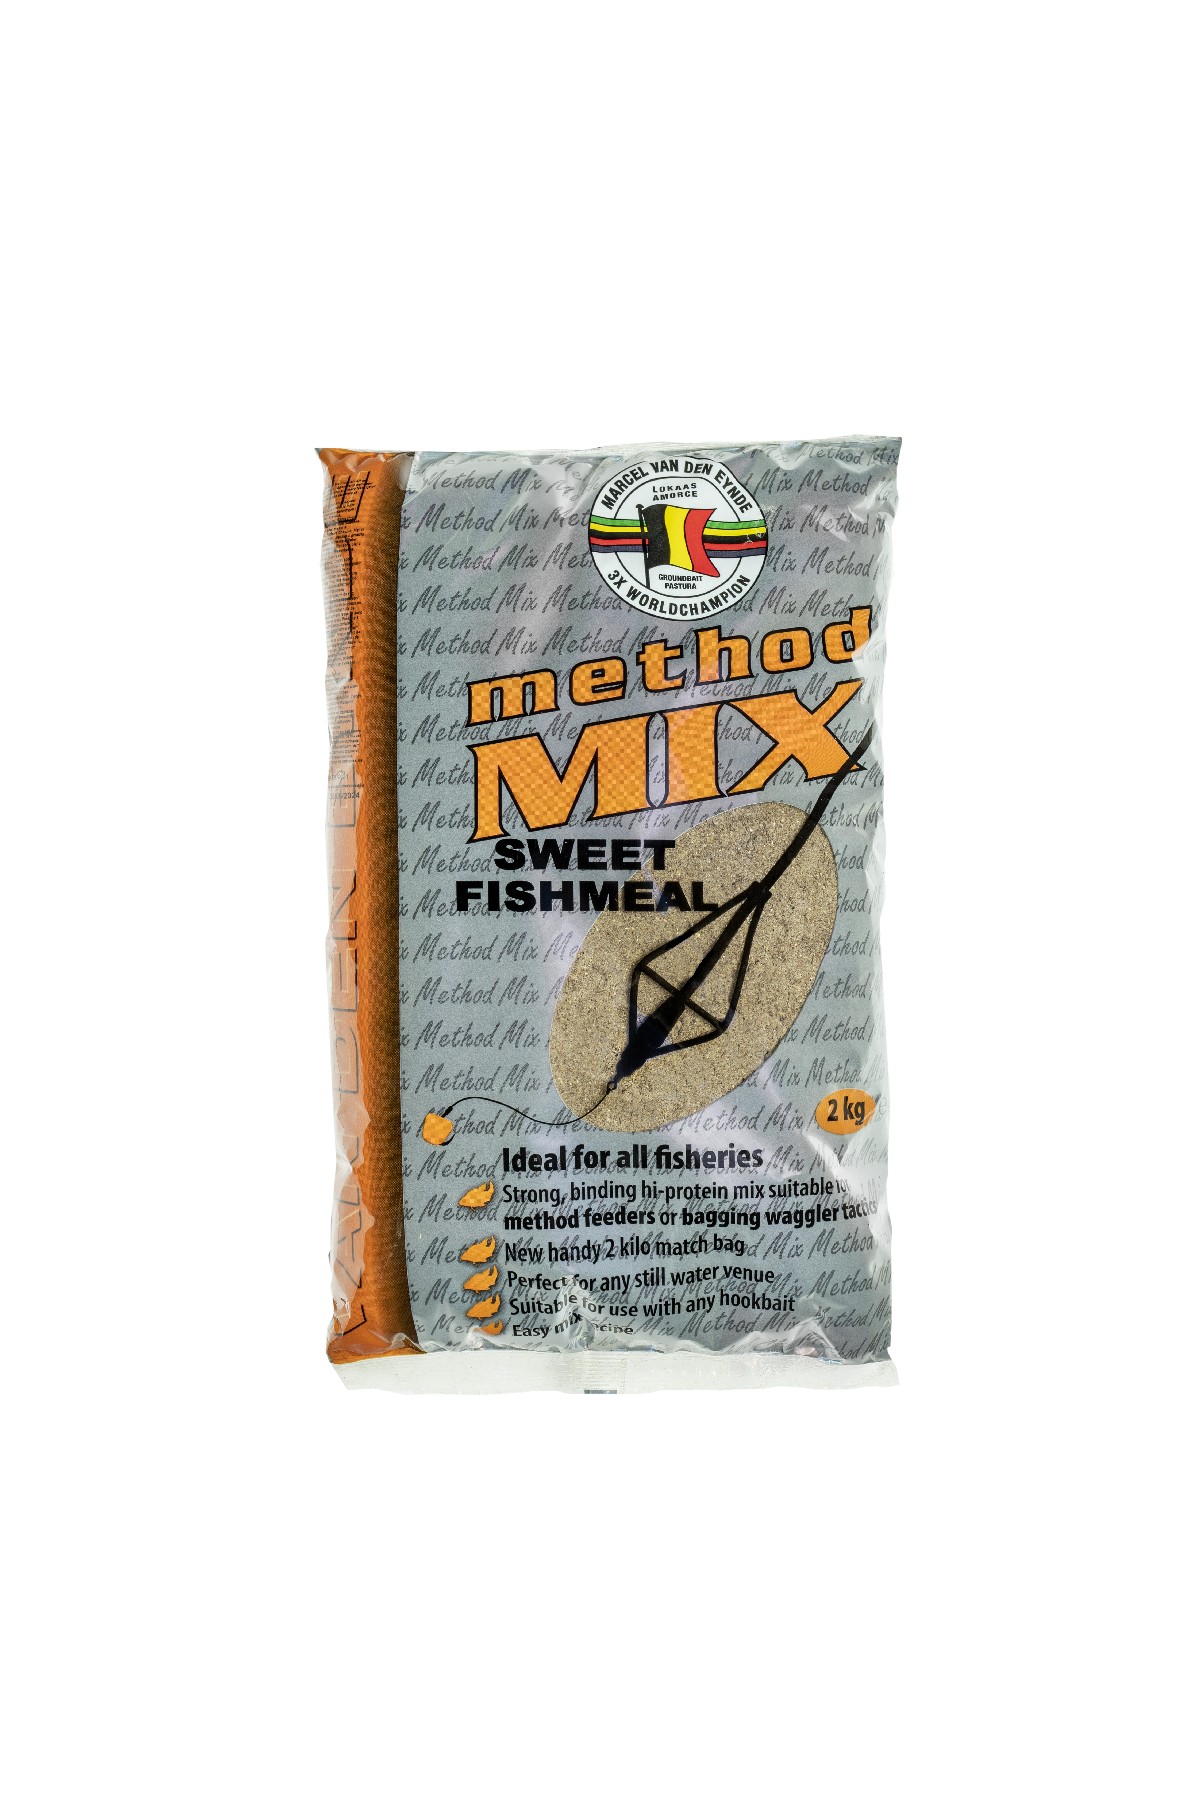 Mengenrabatt vd Eynde Method Mix Sweet Fishmeal 6x2 kg